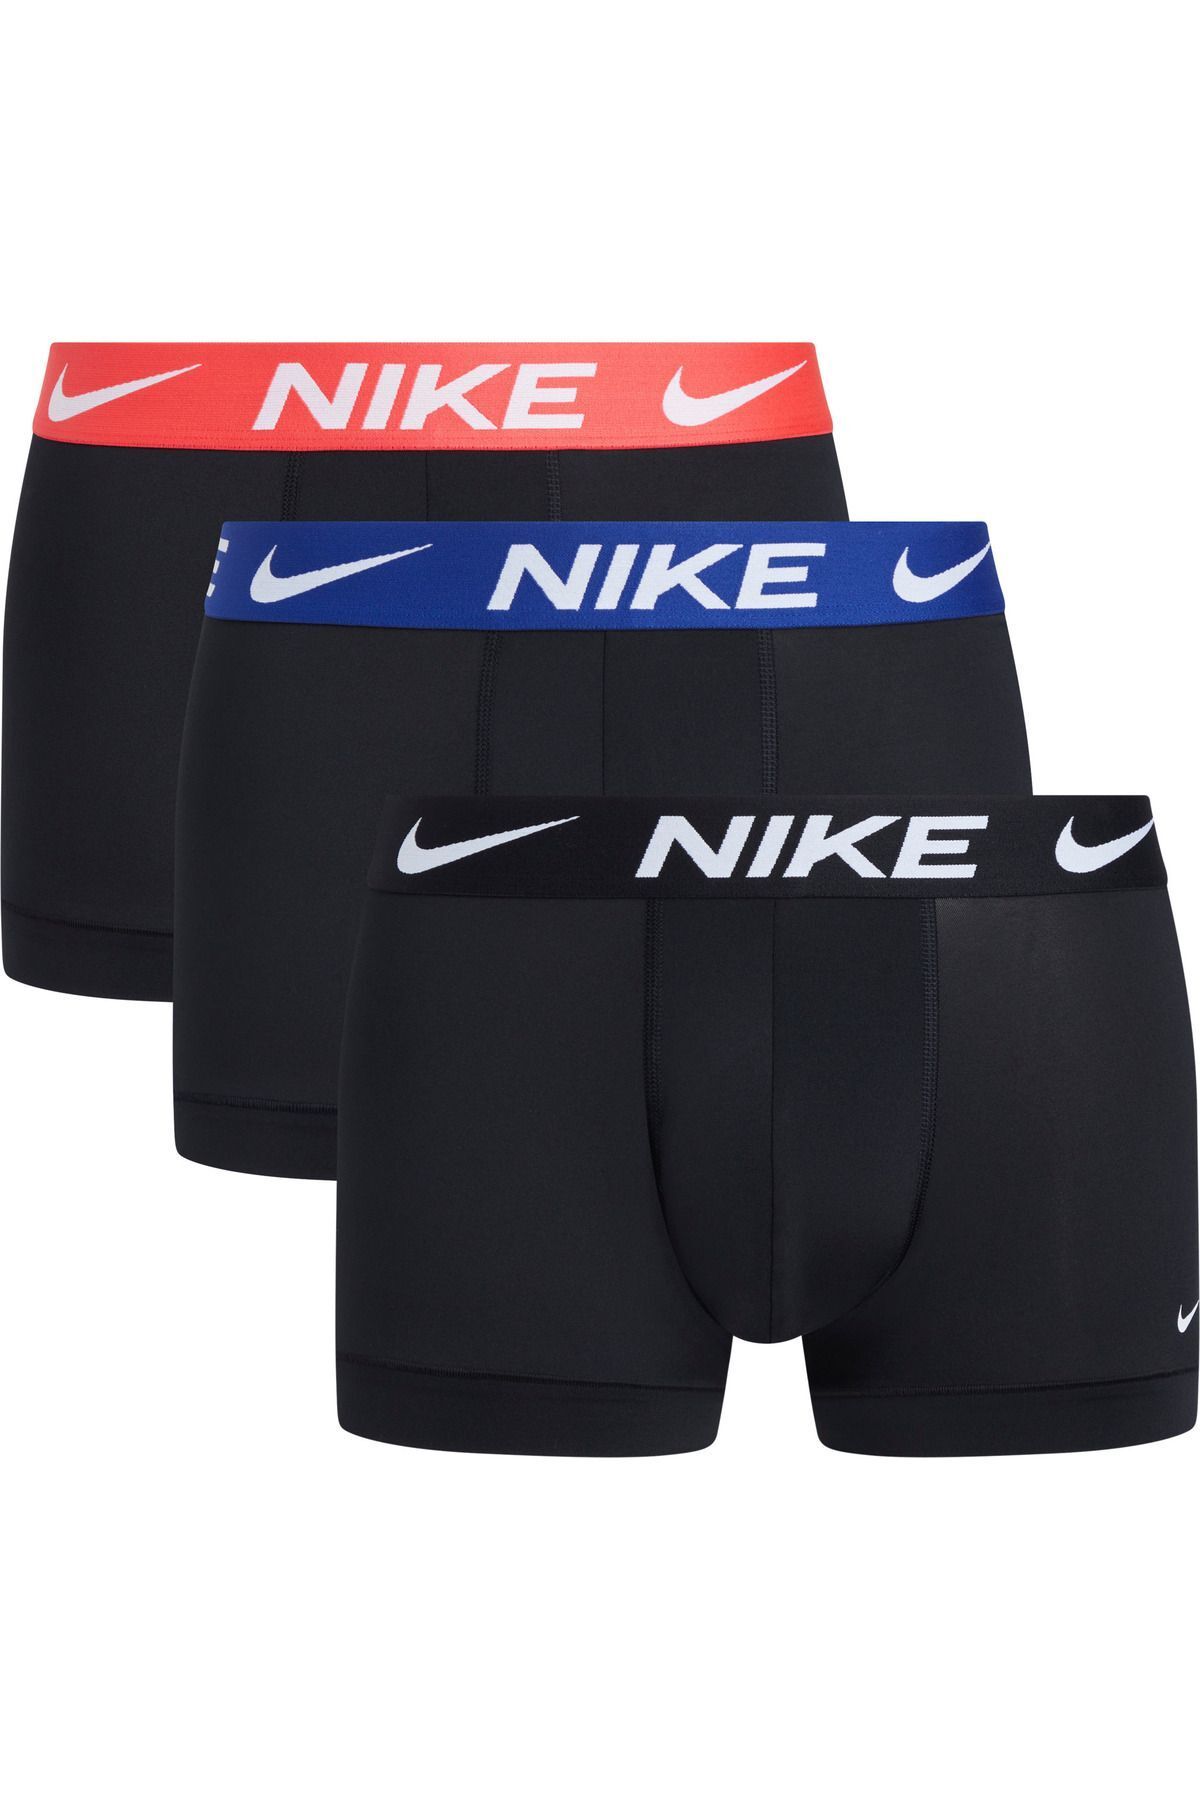 Nike Erkek Marka Logolu Elastik Bantlı Günlük Kullanıma Uygun Siyah7 Boxer 0000KE1156-GOR